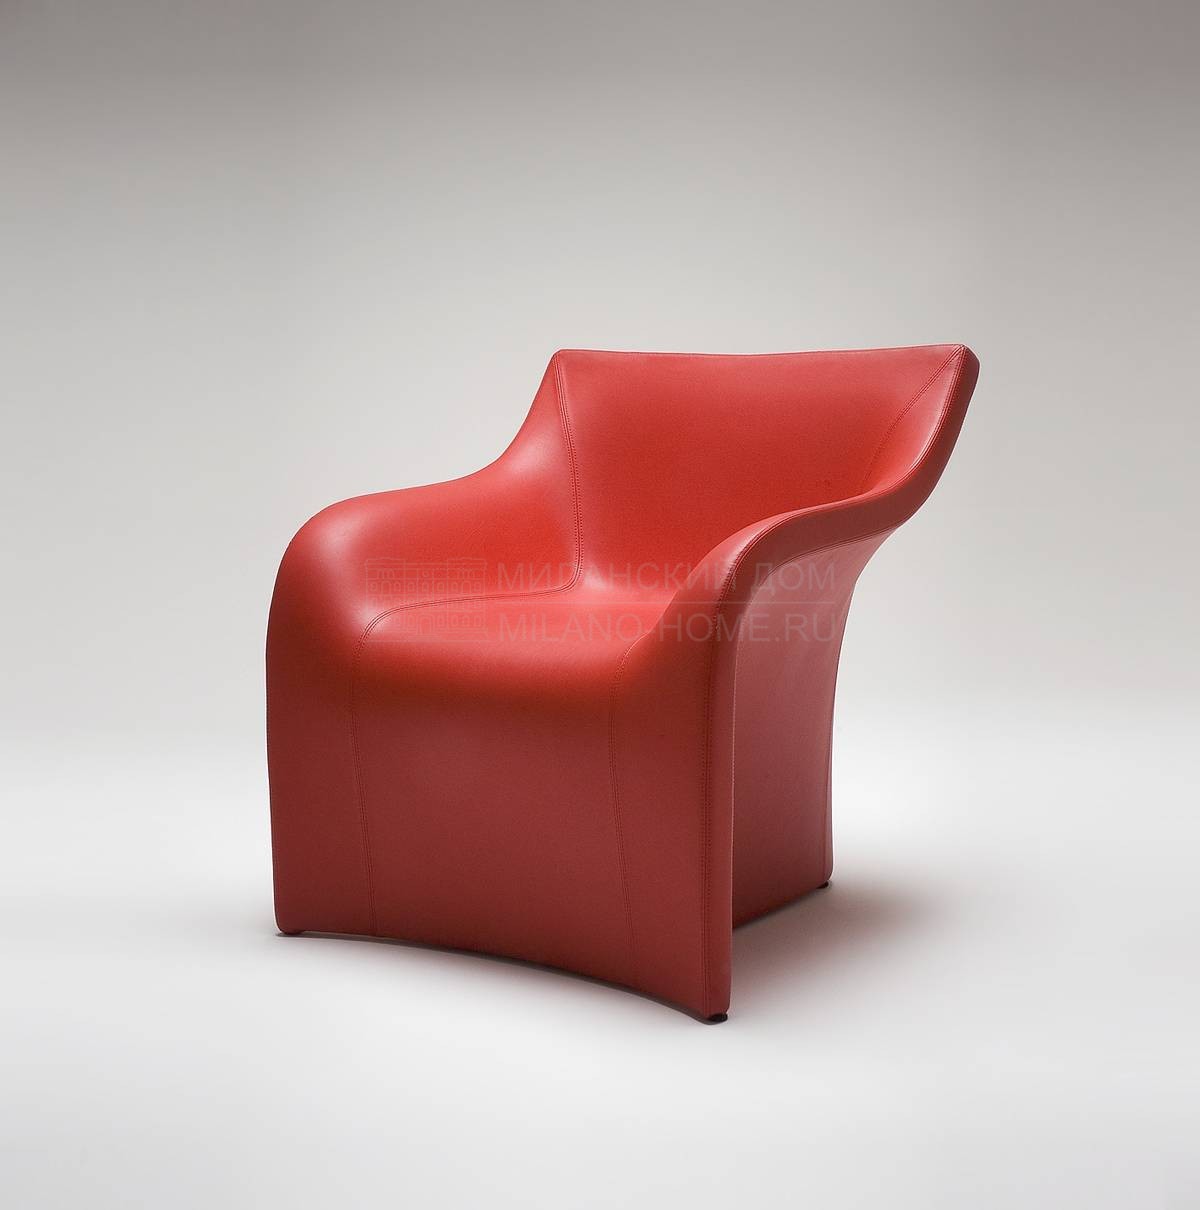 Кожаное кресло Mist armchair из Италии фабрики DOMODINAMICA